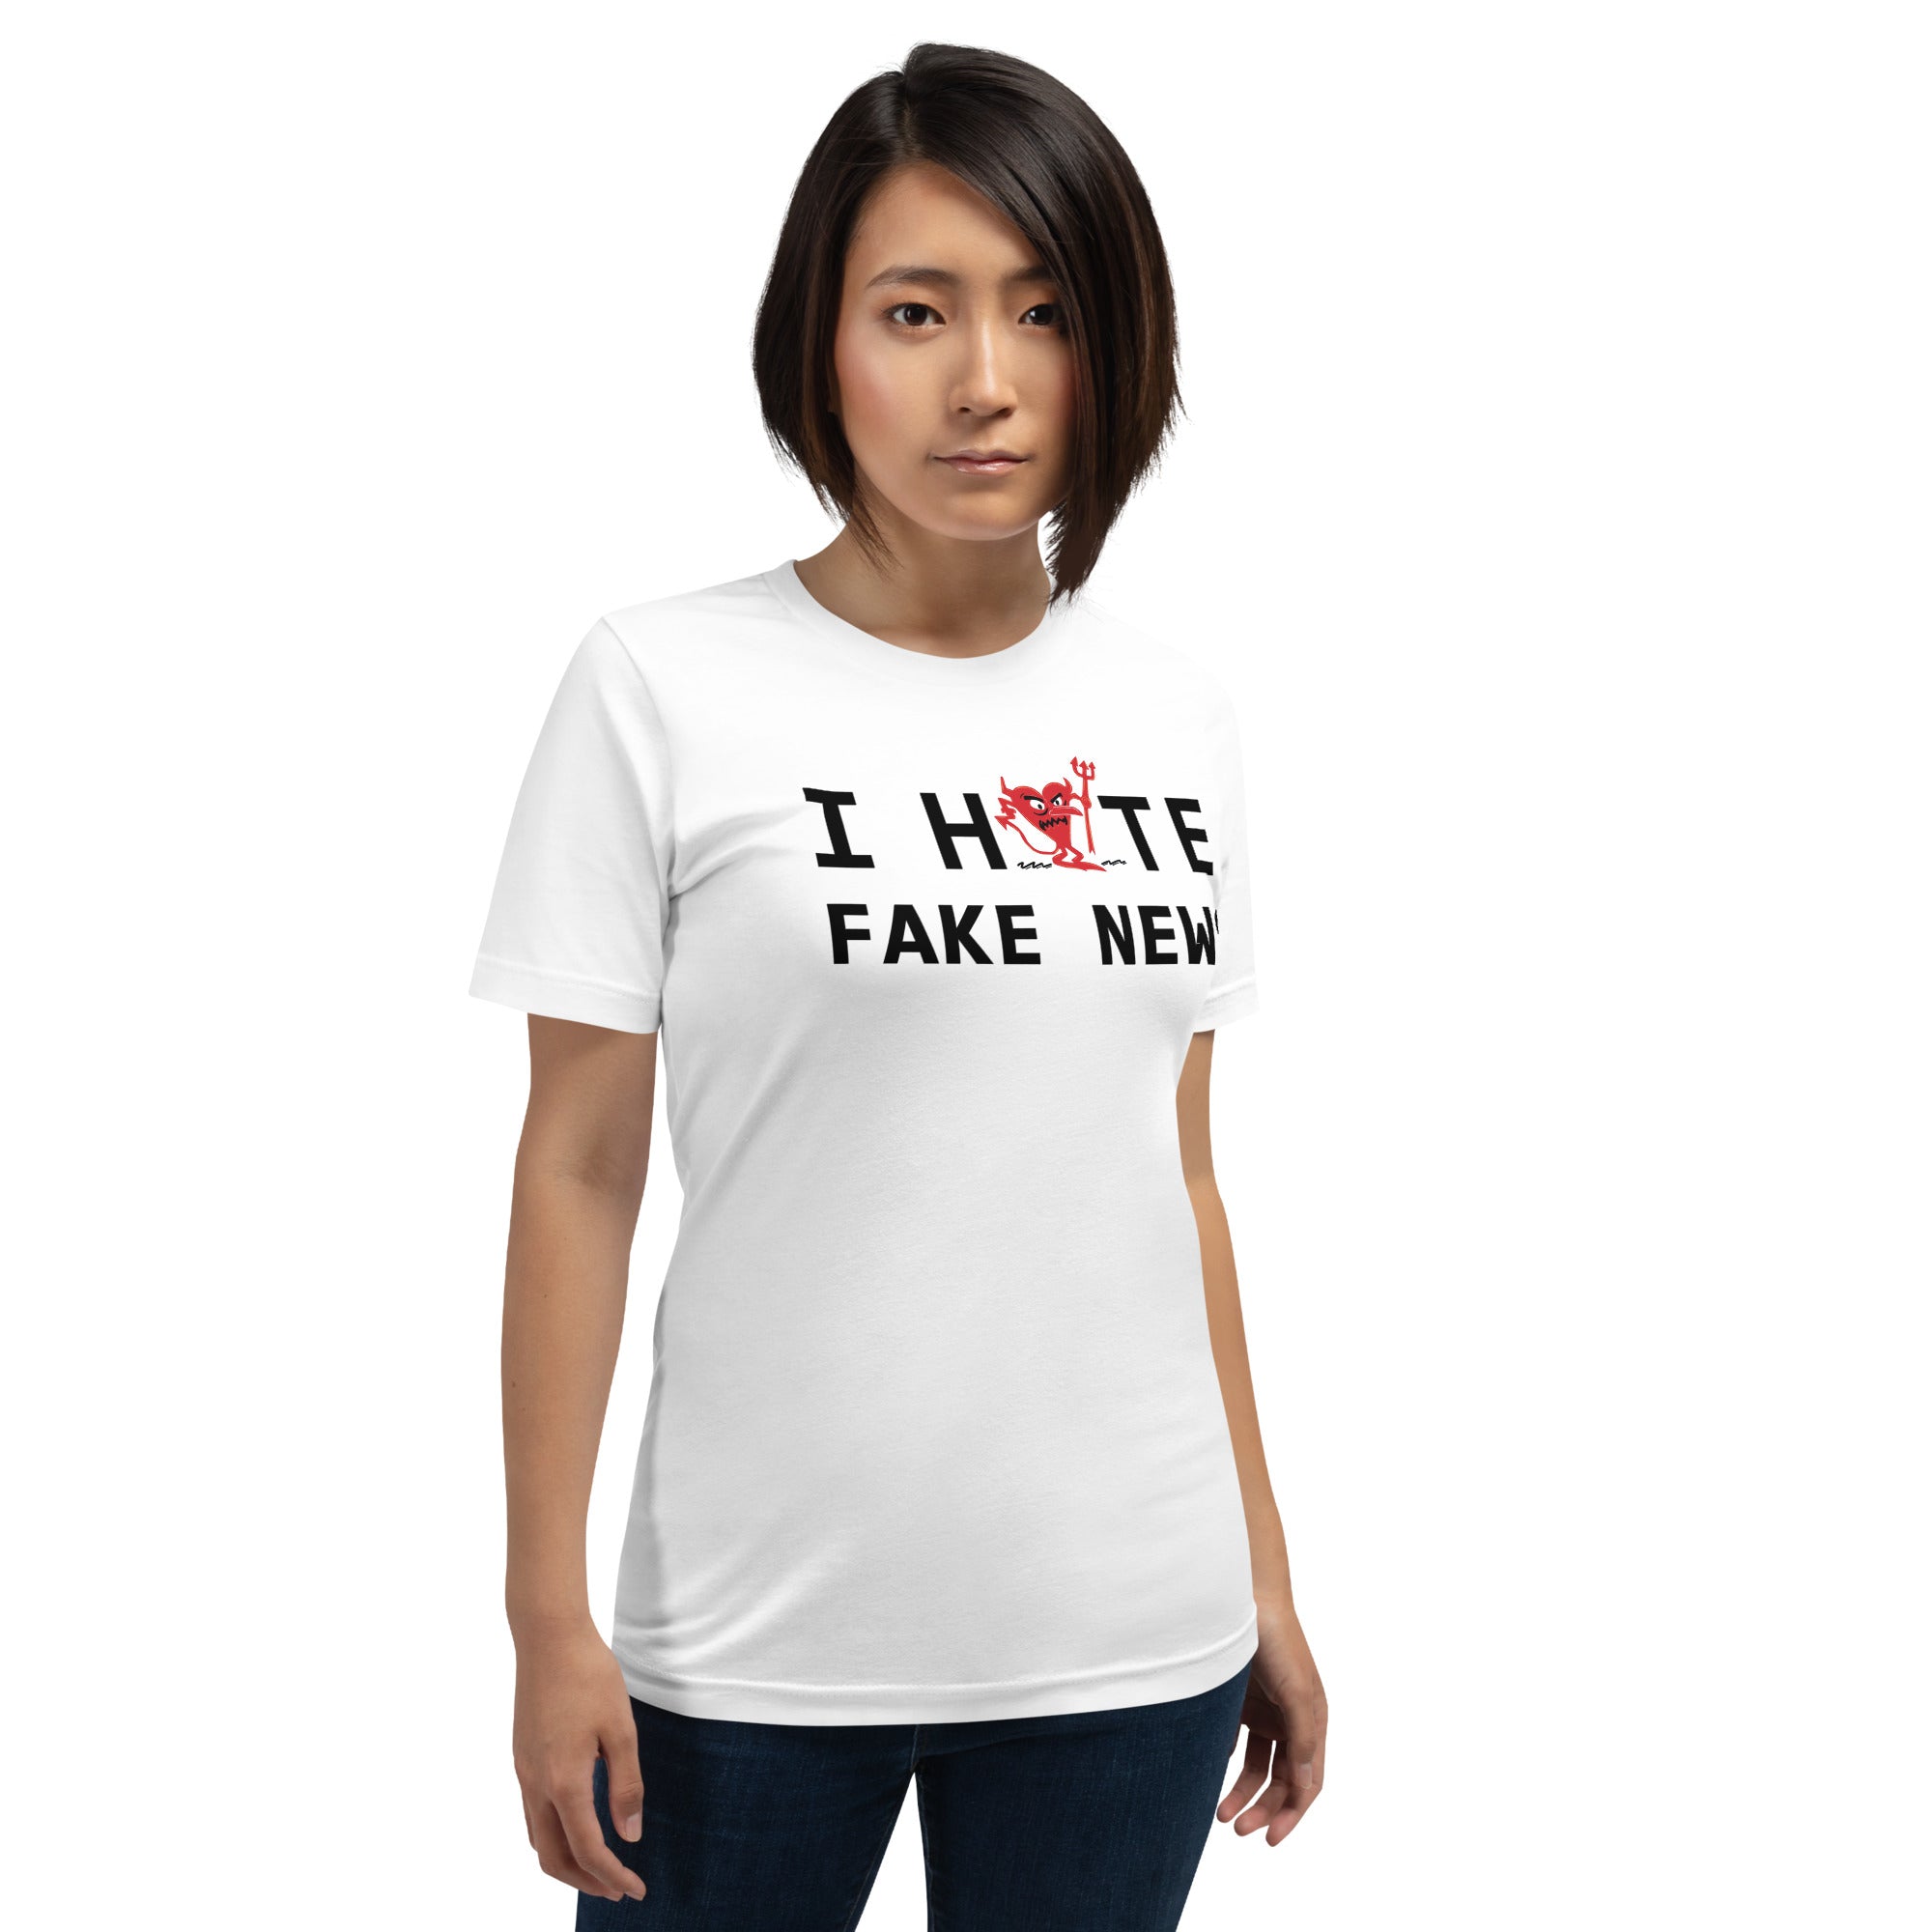 I Hate FAKE NEWS Unisex t-shirt